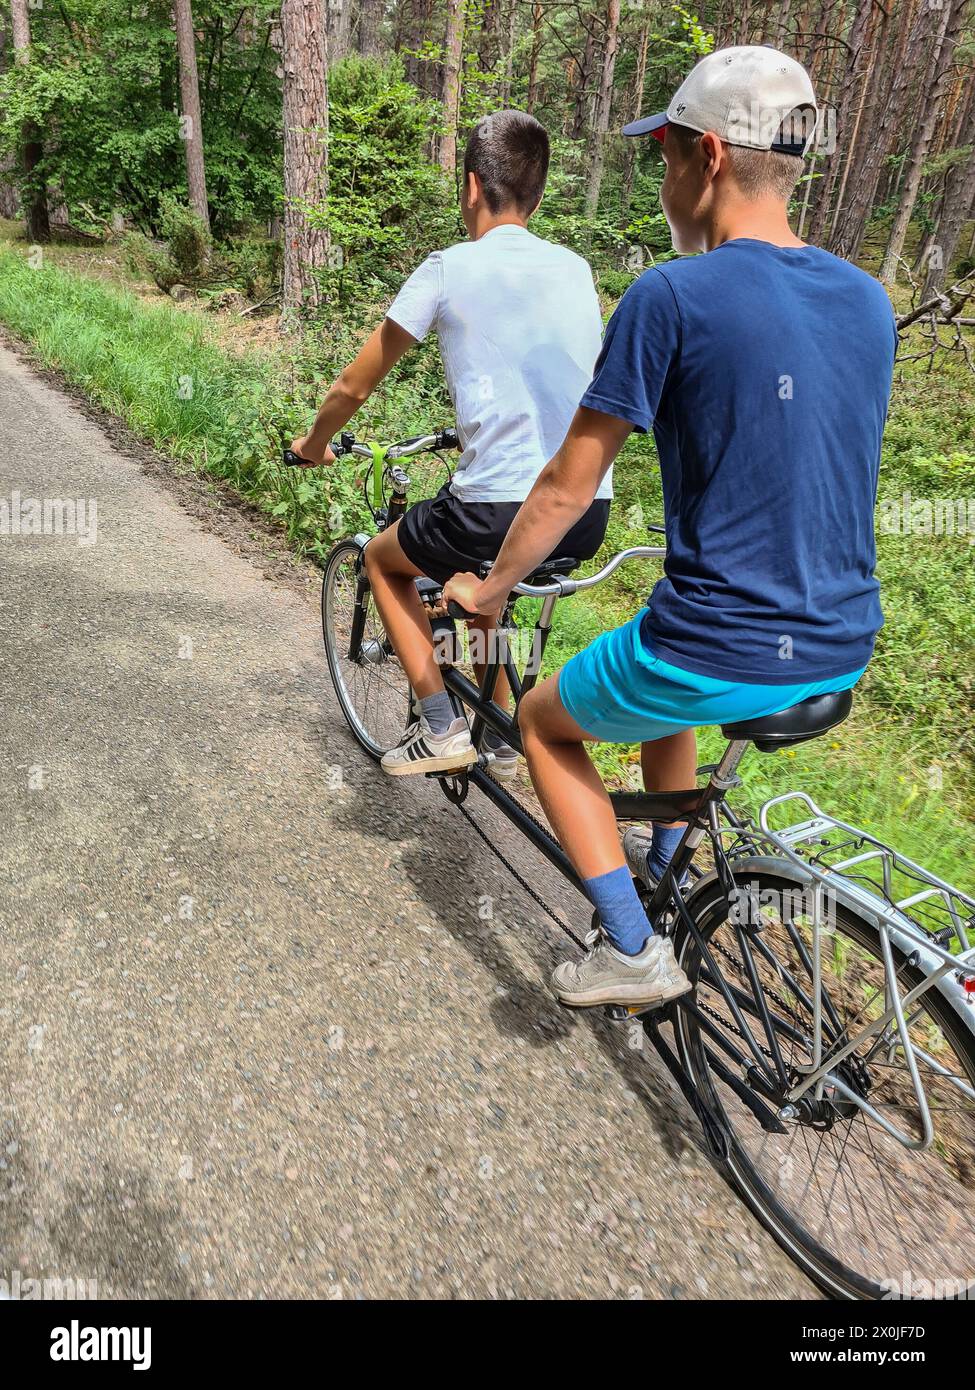 Zwei Teenager, die auf einer schmalen Straße durch einen grünen Wald im Ferienort Prerow, Fischland Darß, Mecklenburg-Vorpommern fahren Stockfoto